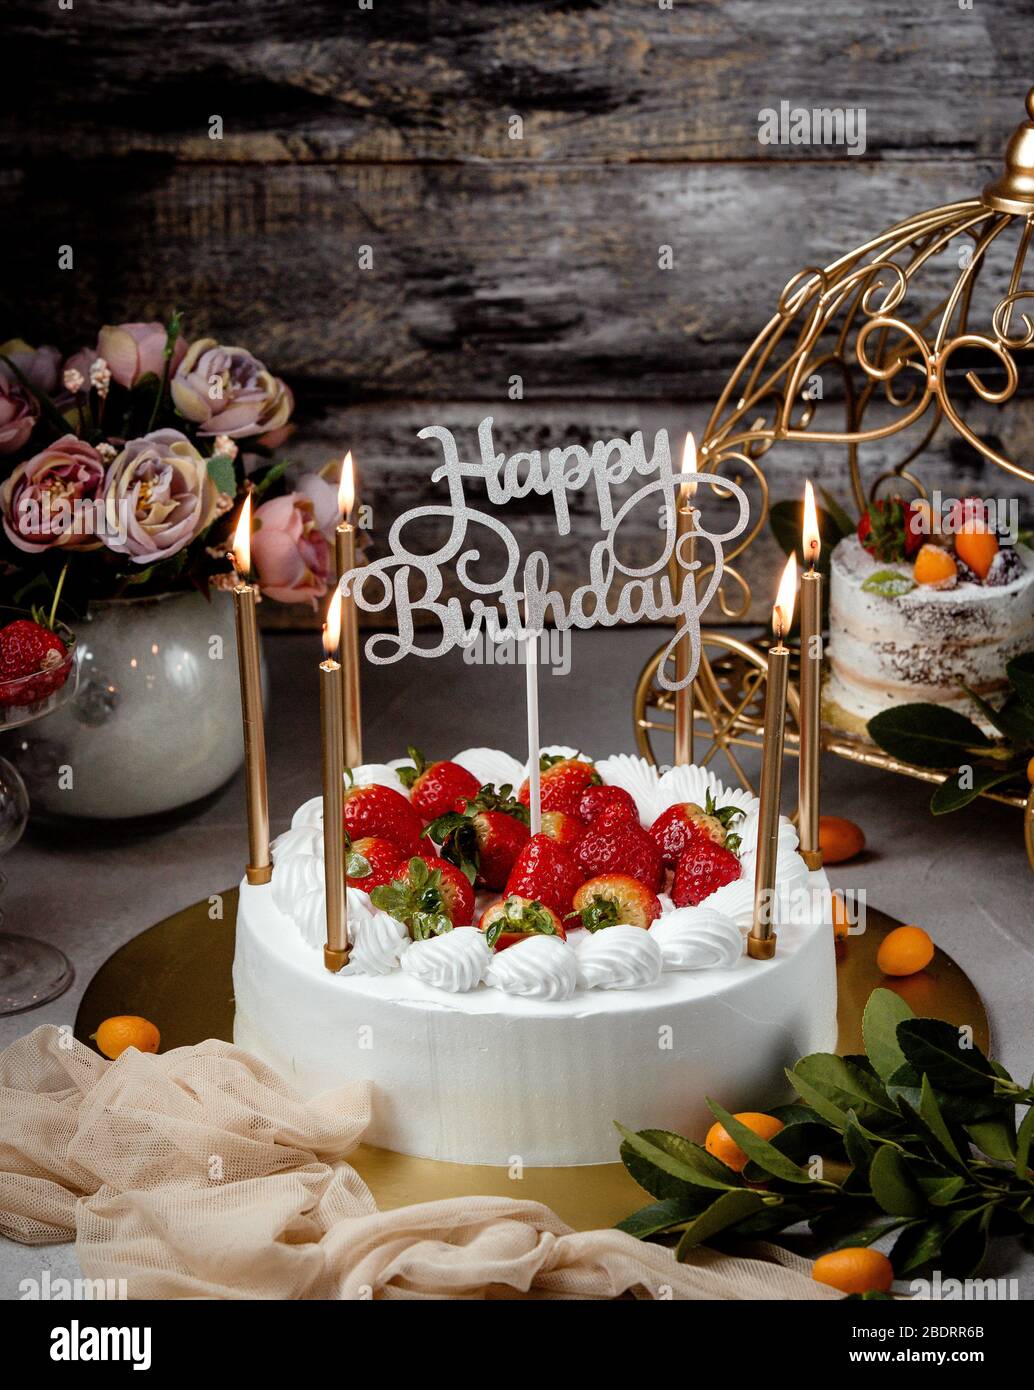 Imagen de un pastel de cumpleaños con velas doradas